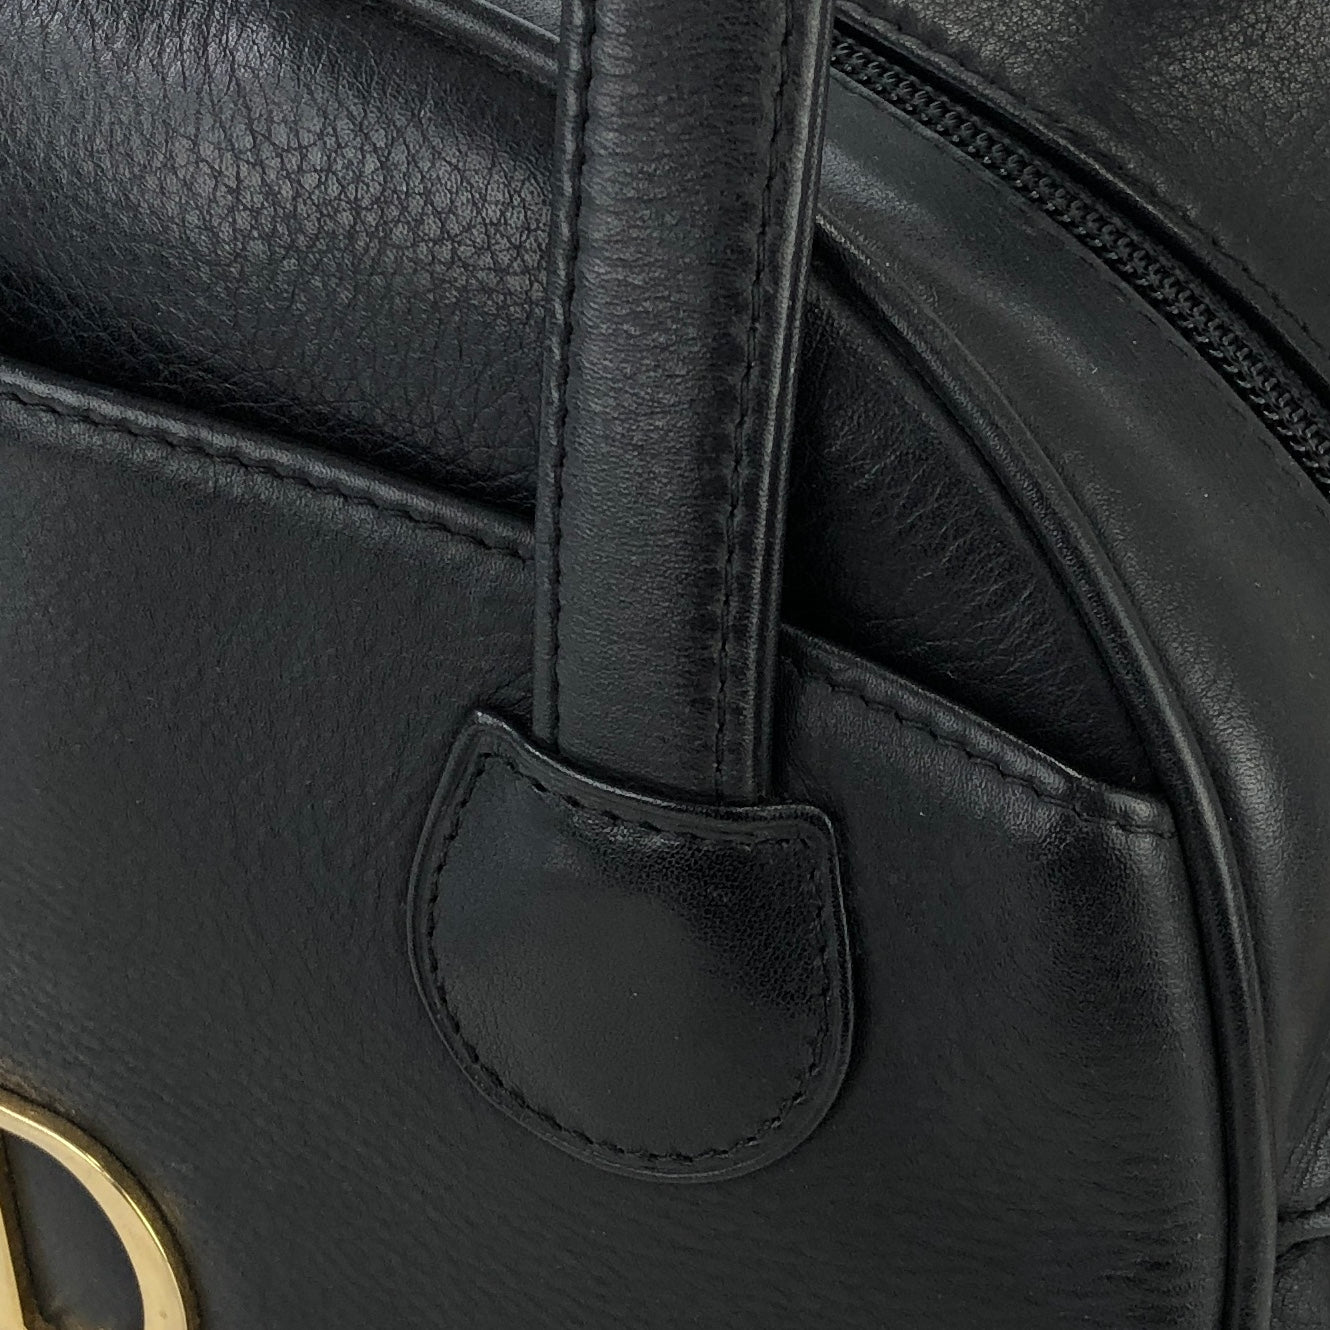 Christian Dior CD motif Embossed Leather Handbag Black Vintage Old c7ce8c